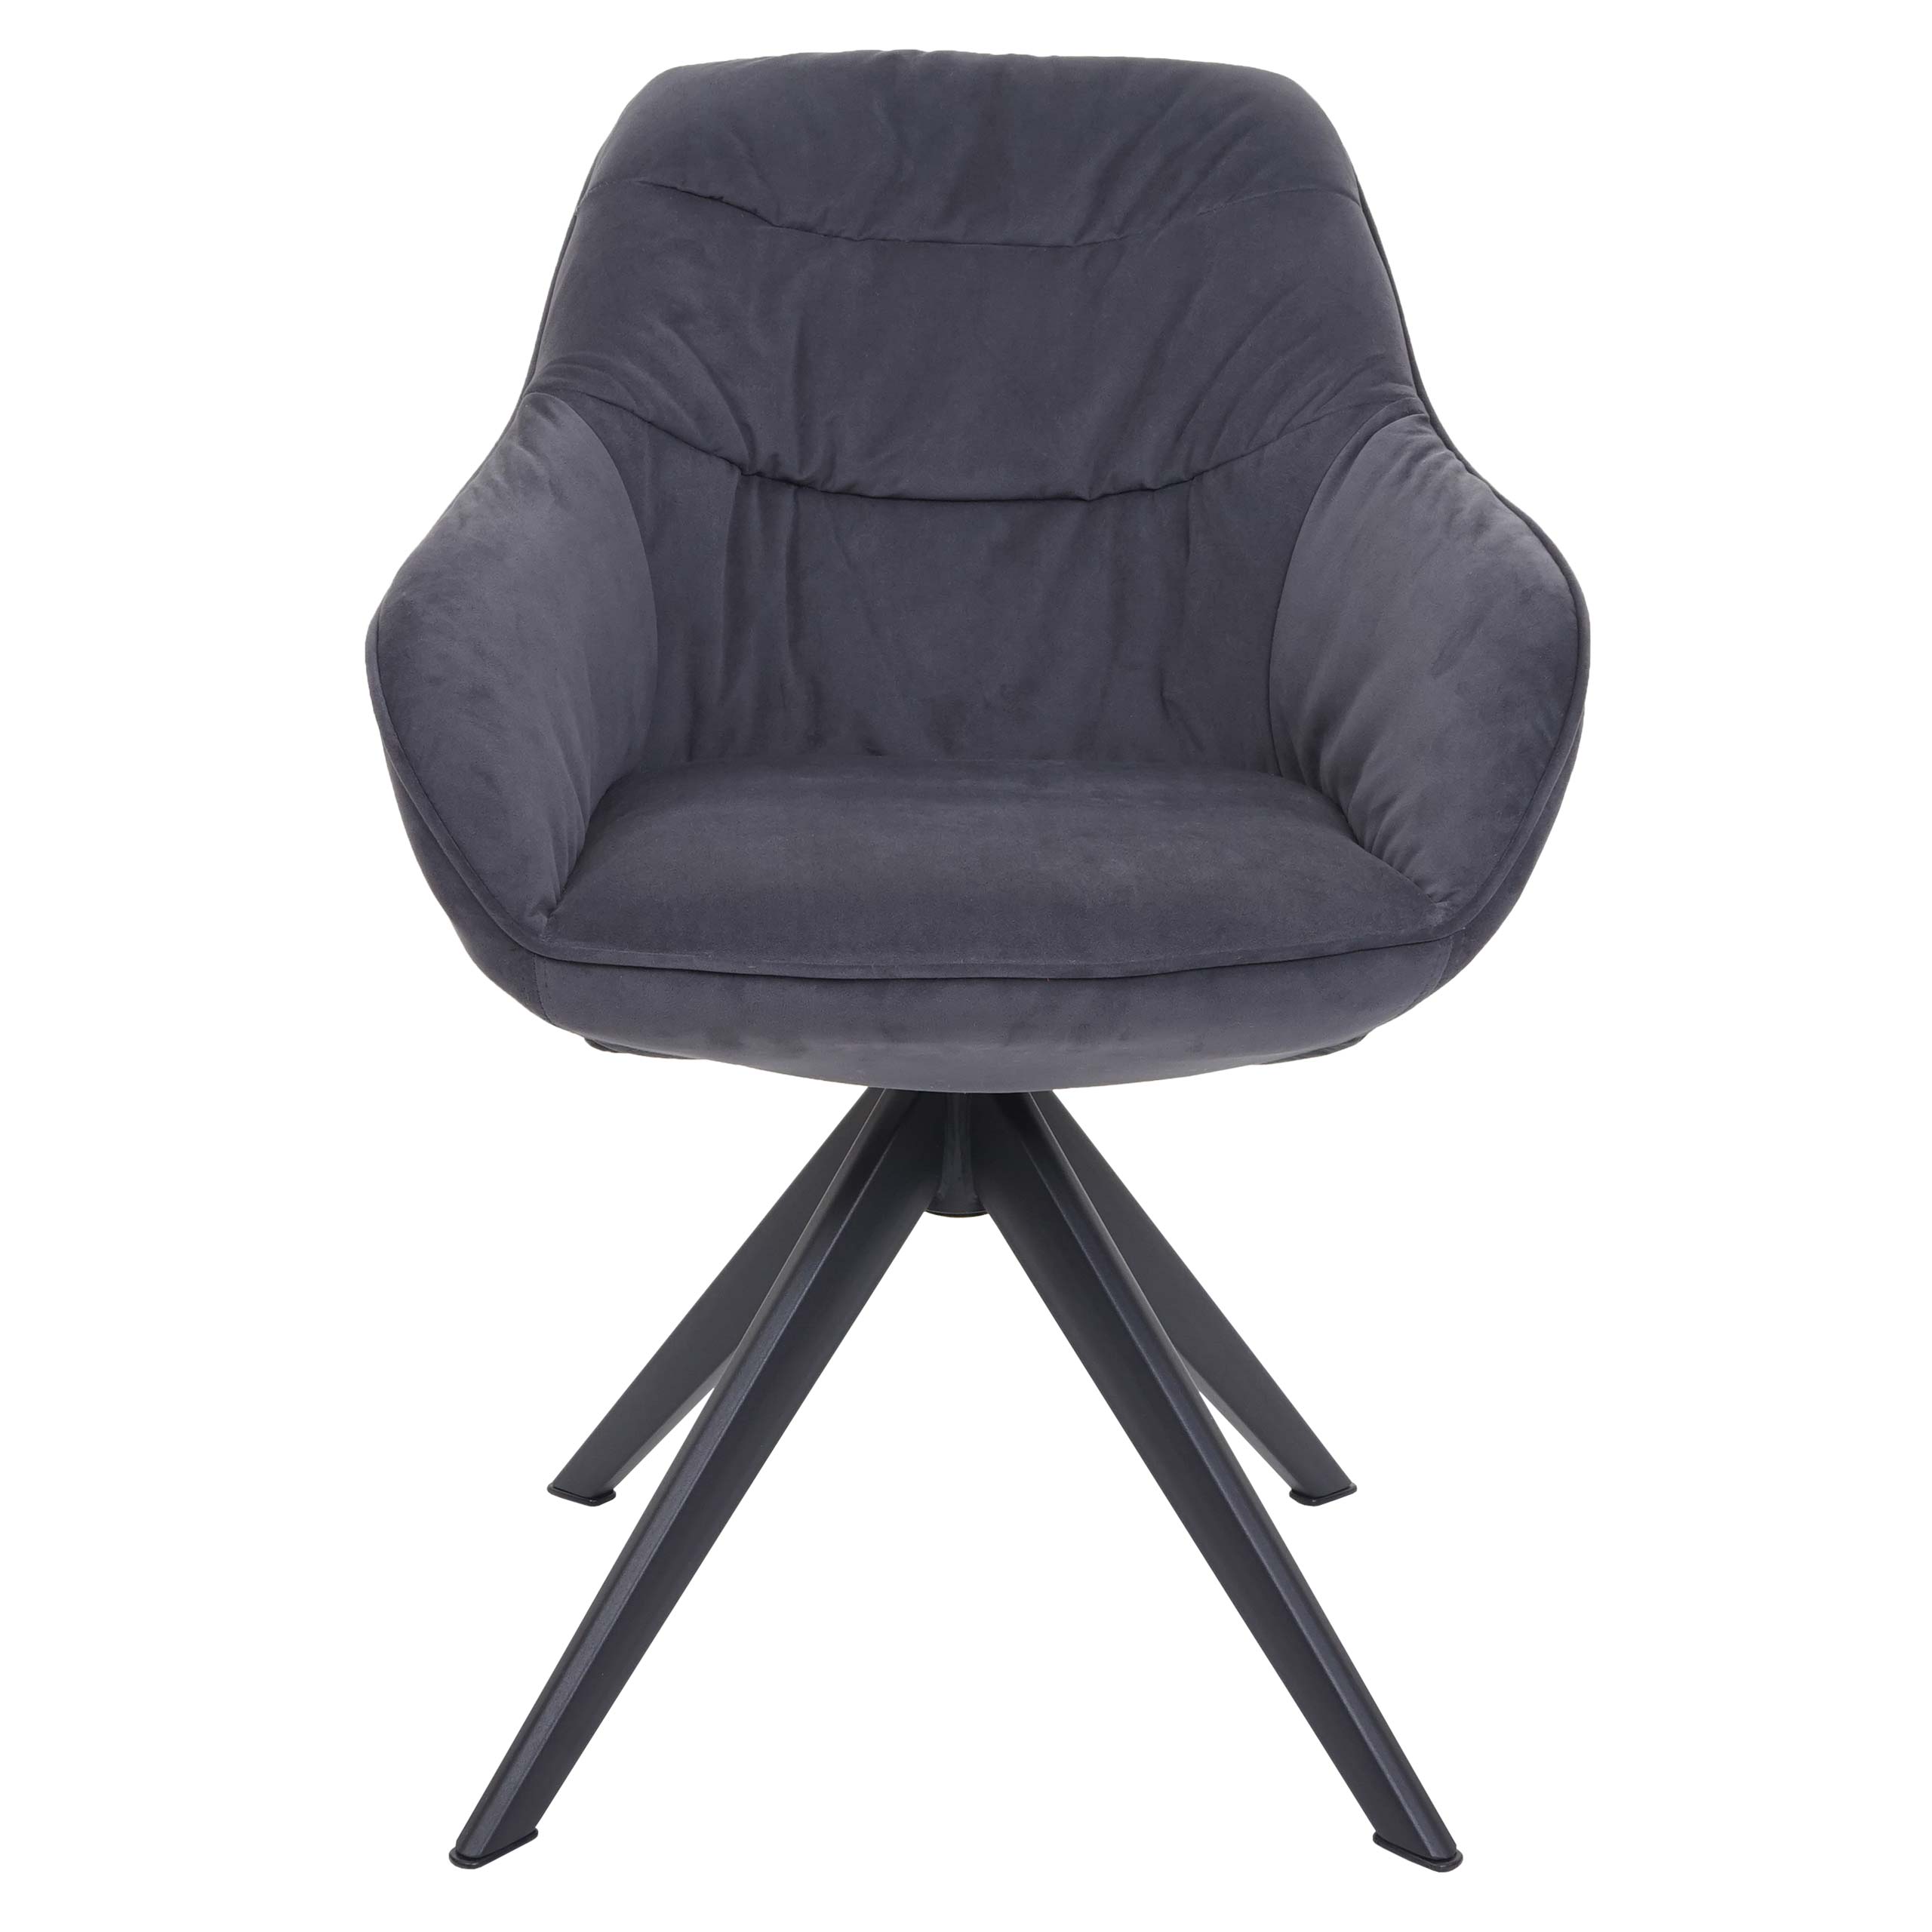 Esszimmerstuhl HWC-K28, Küchenstuhl Stuhl mit Armlehne drehbar Metall Stoff  grau | eBay